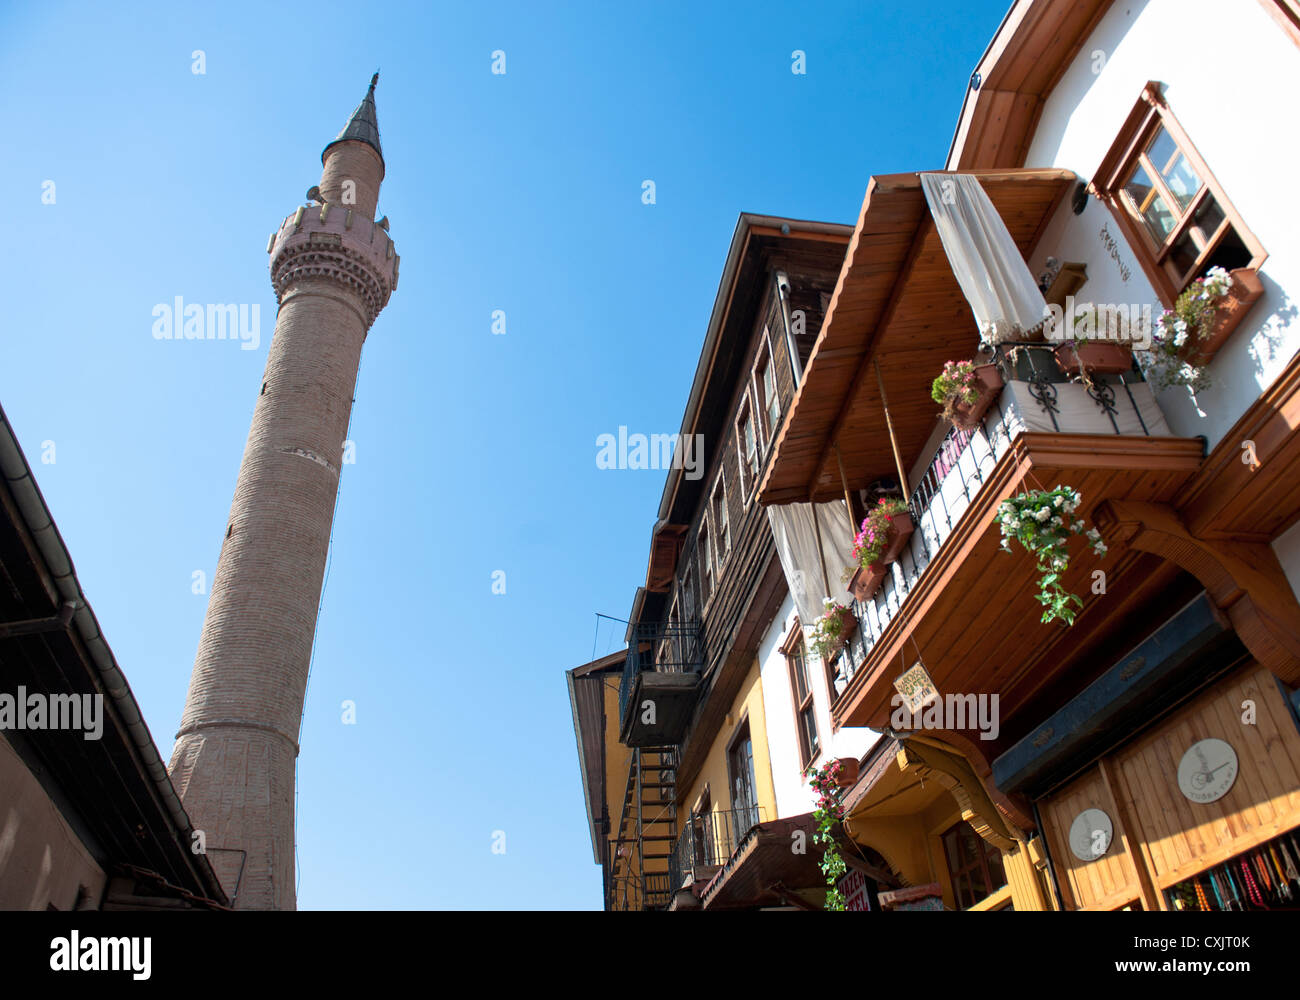 Minarett di una moschea e case tradizionali nella città vecchia di Ankara, capitale della Turchia Foto Stock